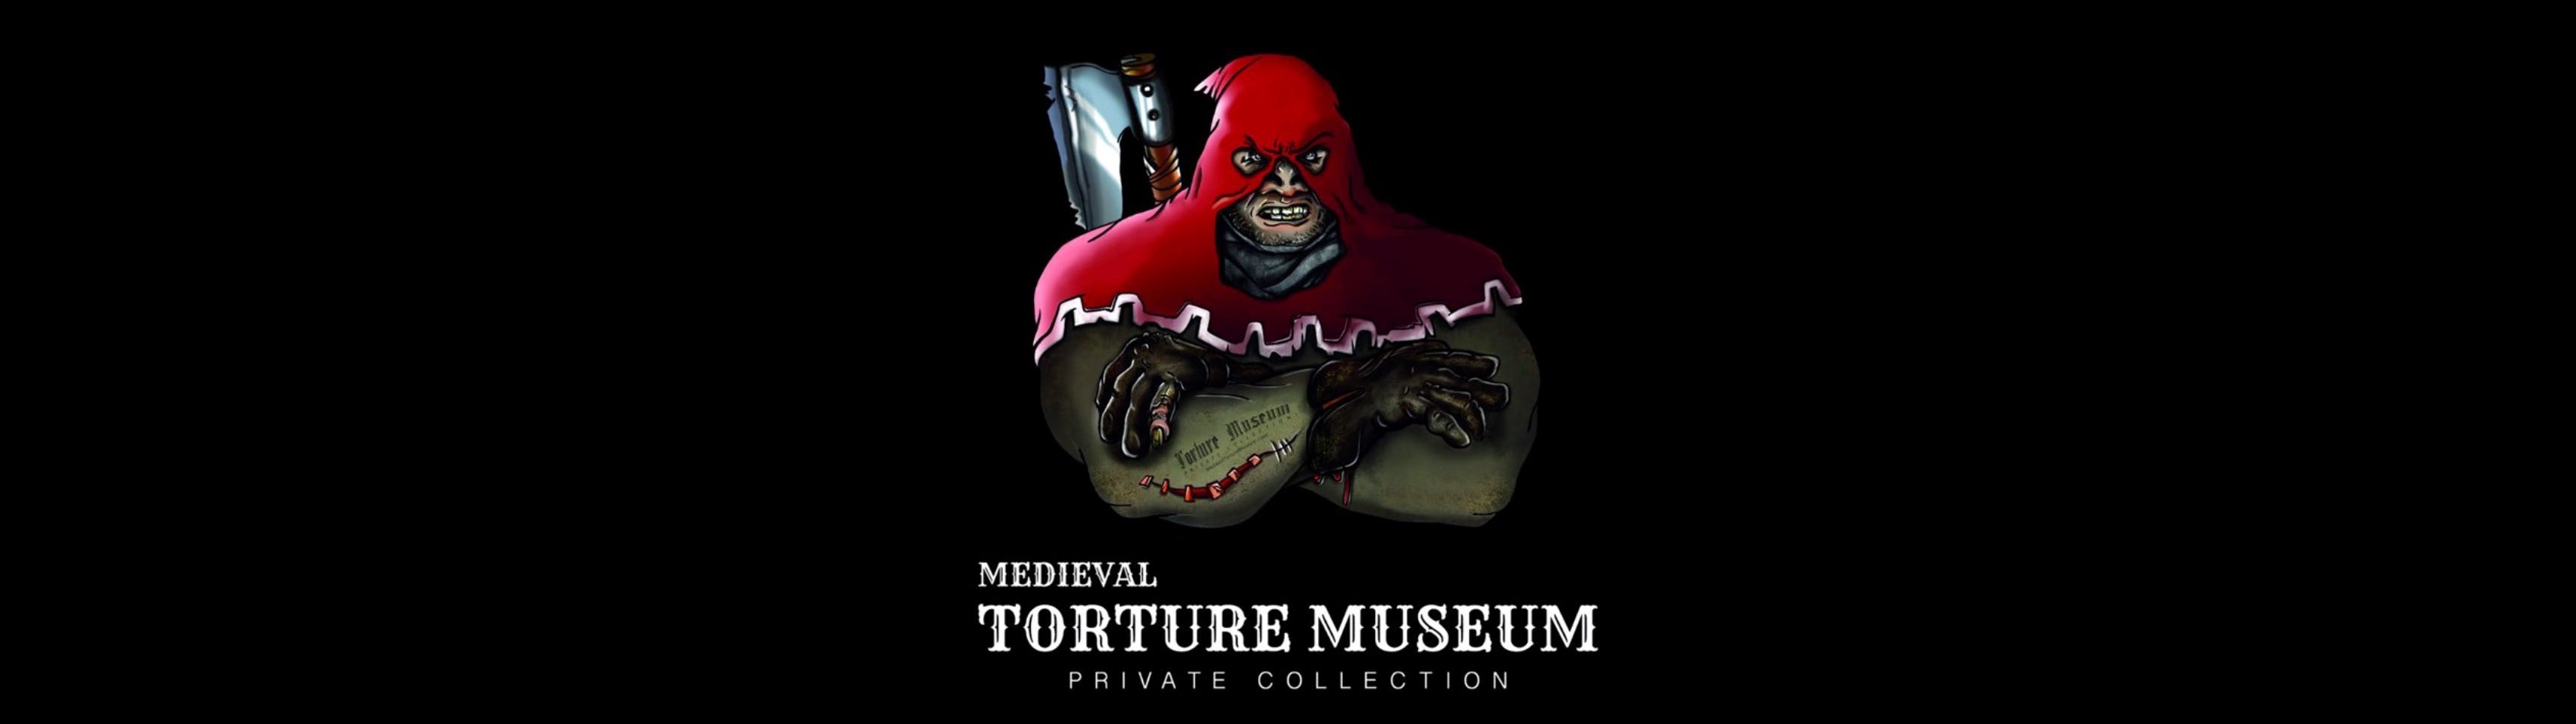 Musée de la torture médiévale avec audioguide, expérience de chasse aux fantômes et billet pour la Tiny Art Gallery